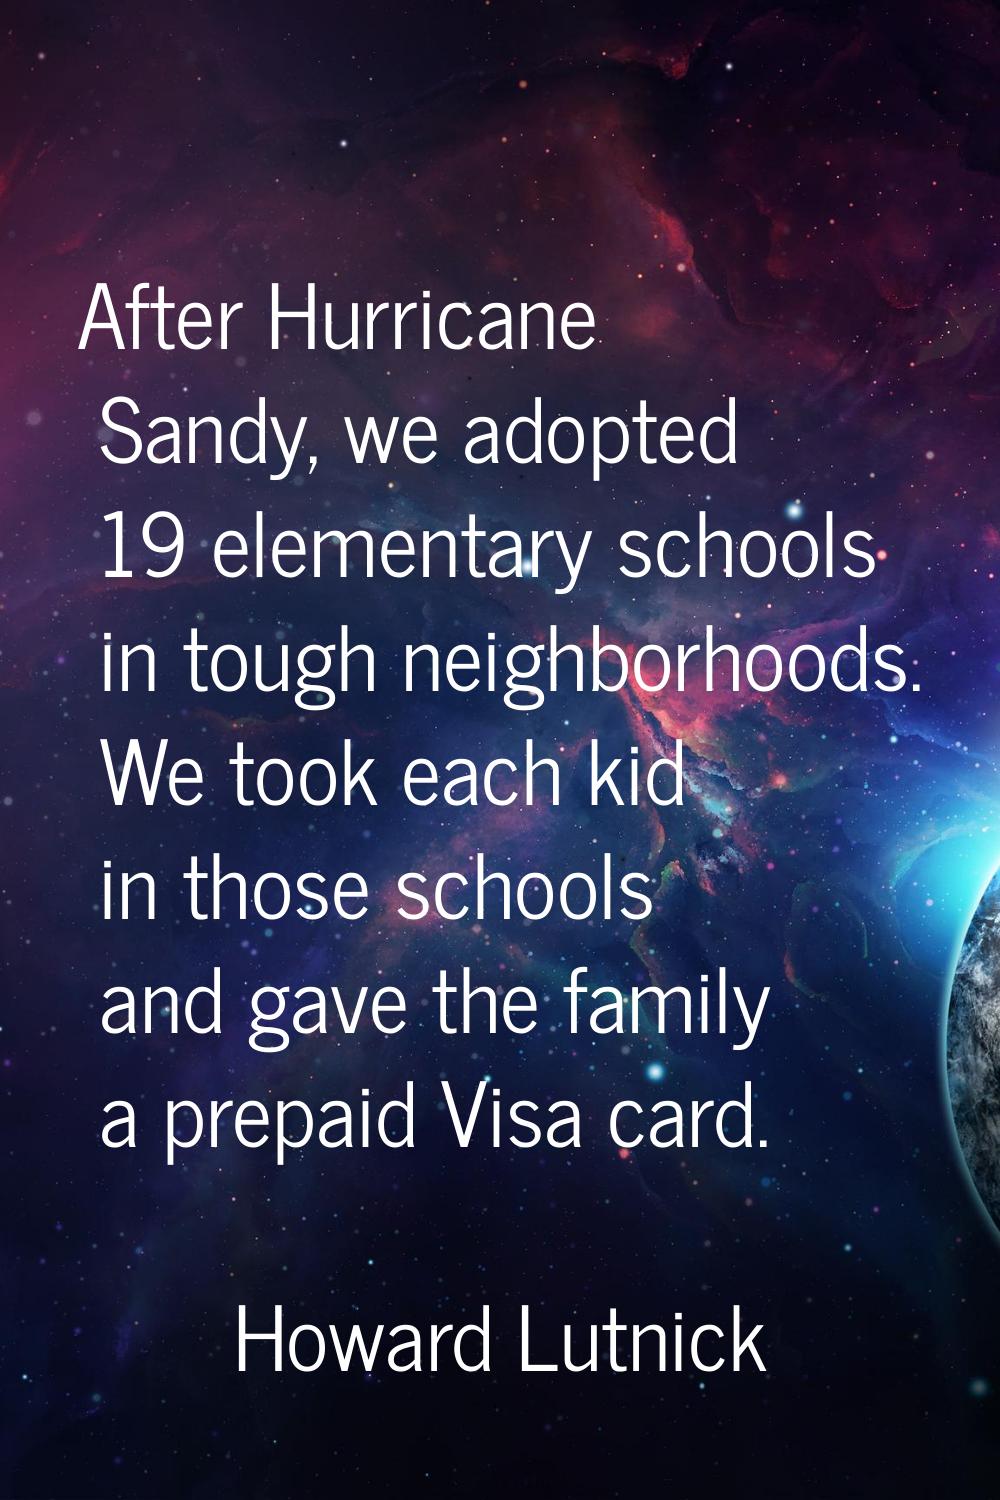 After Hurricane Sandy, we adopted 19 elementary schools in tough neighborhoods. We took each kid in